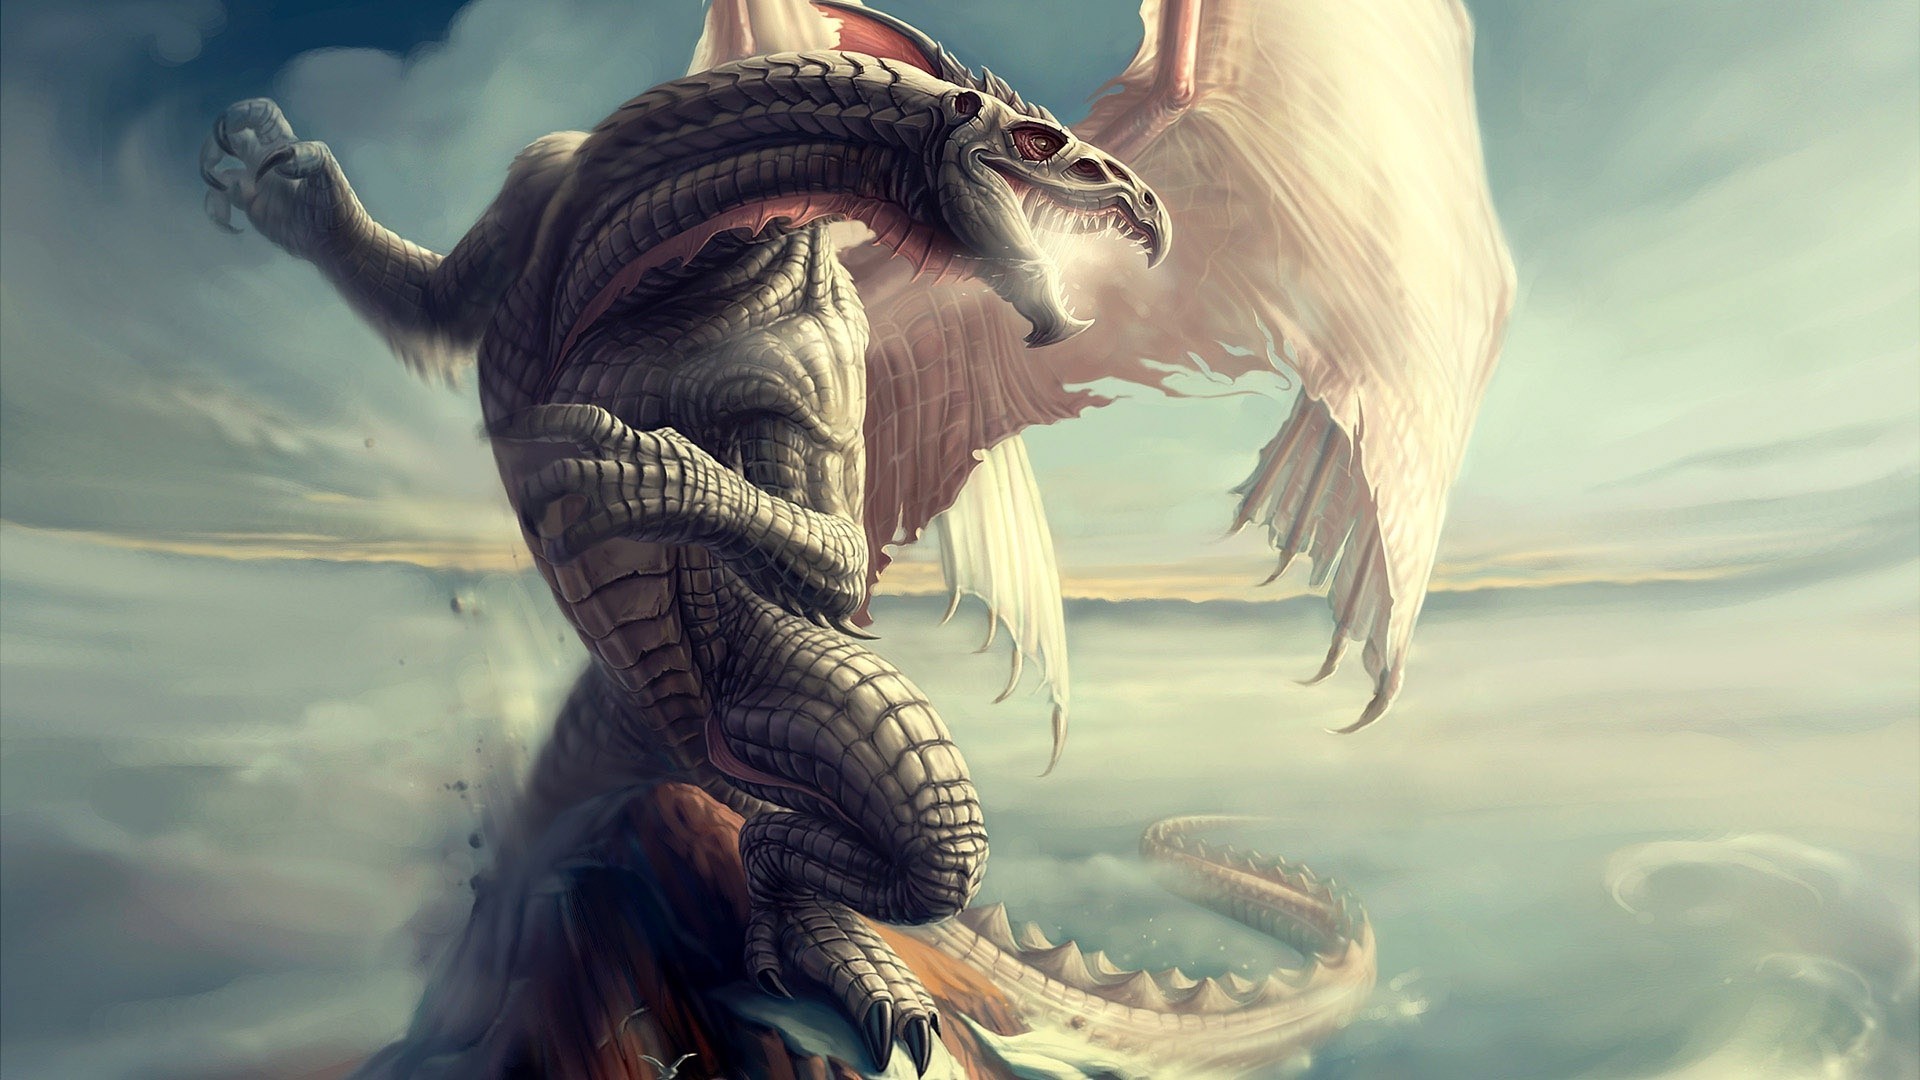 meilleur fond d'écran de dragon,dragon,oeuvre de cg,mythologie,personnage fictif,créature mythique